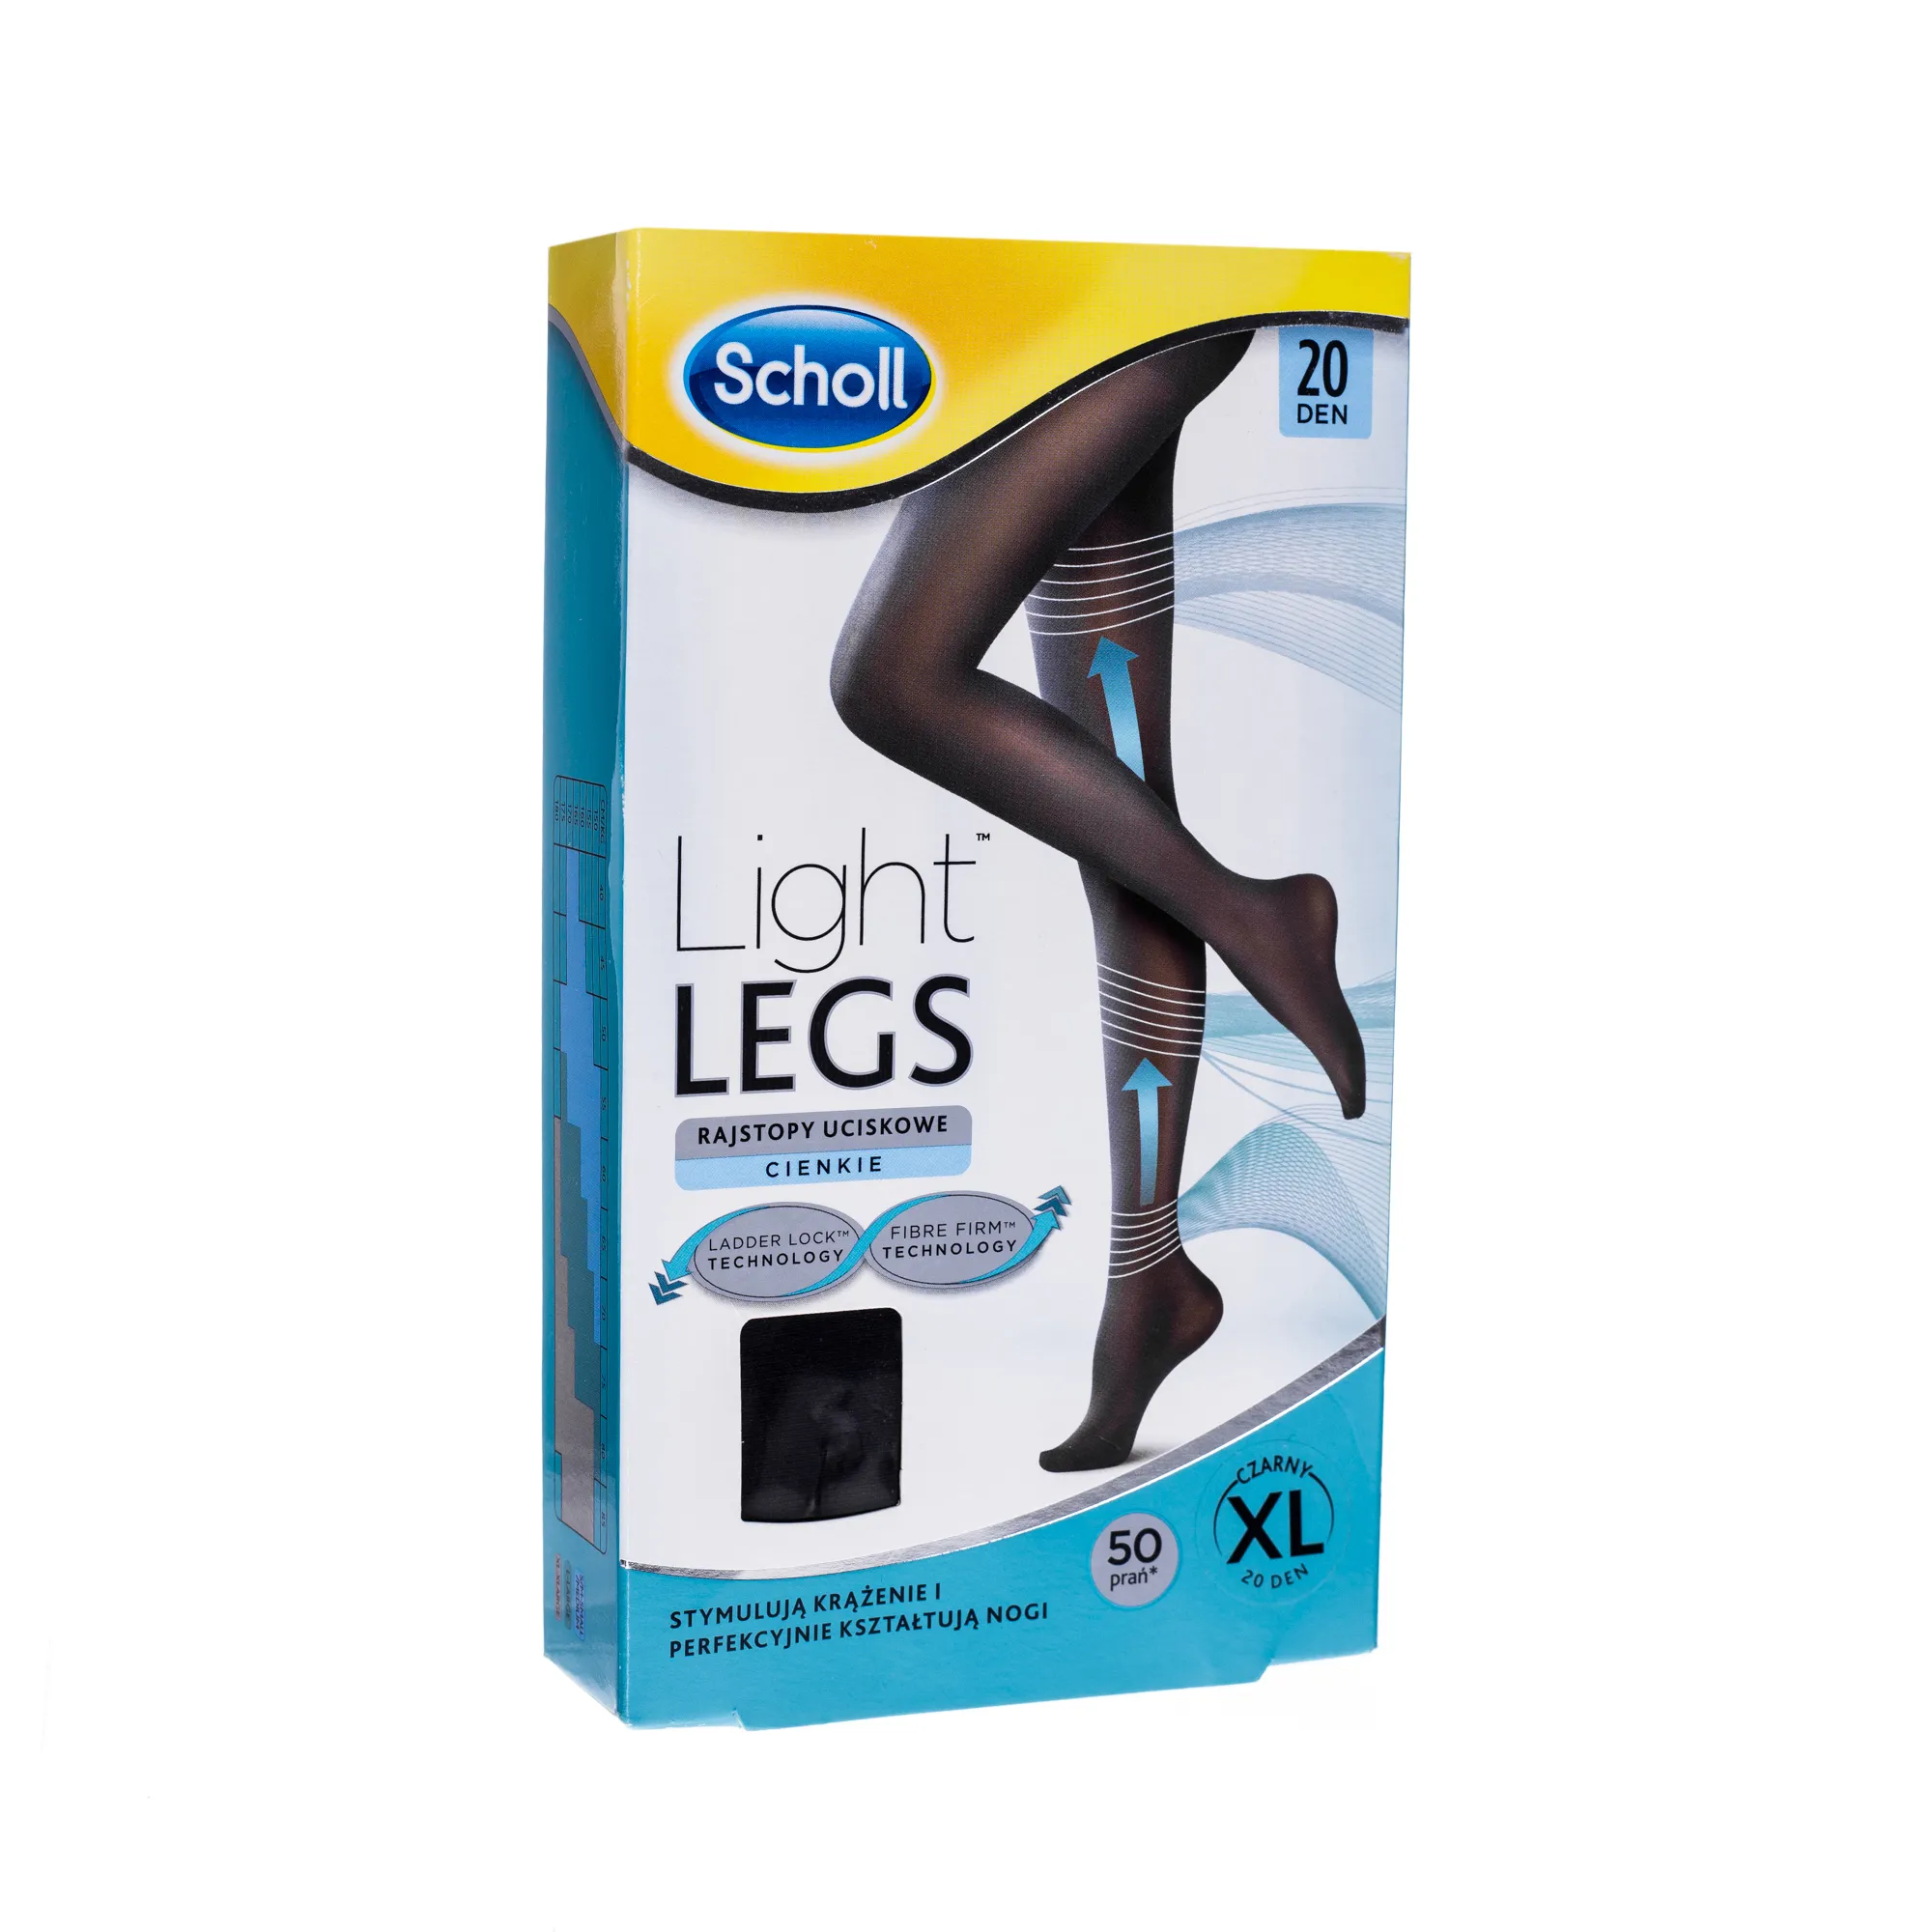 Scholl  Light Legs, rajstopy uciskowe XL, cienkie, czarne, 20 DEN 